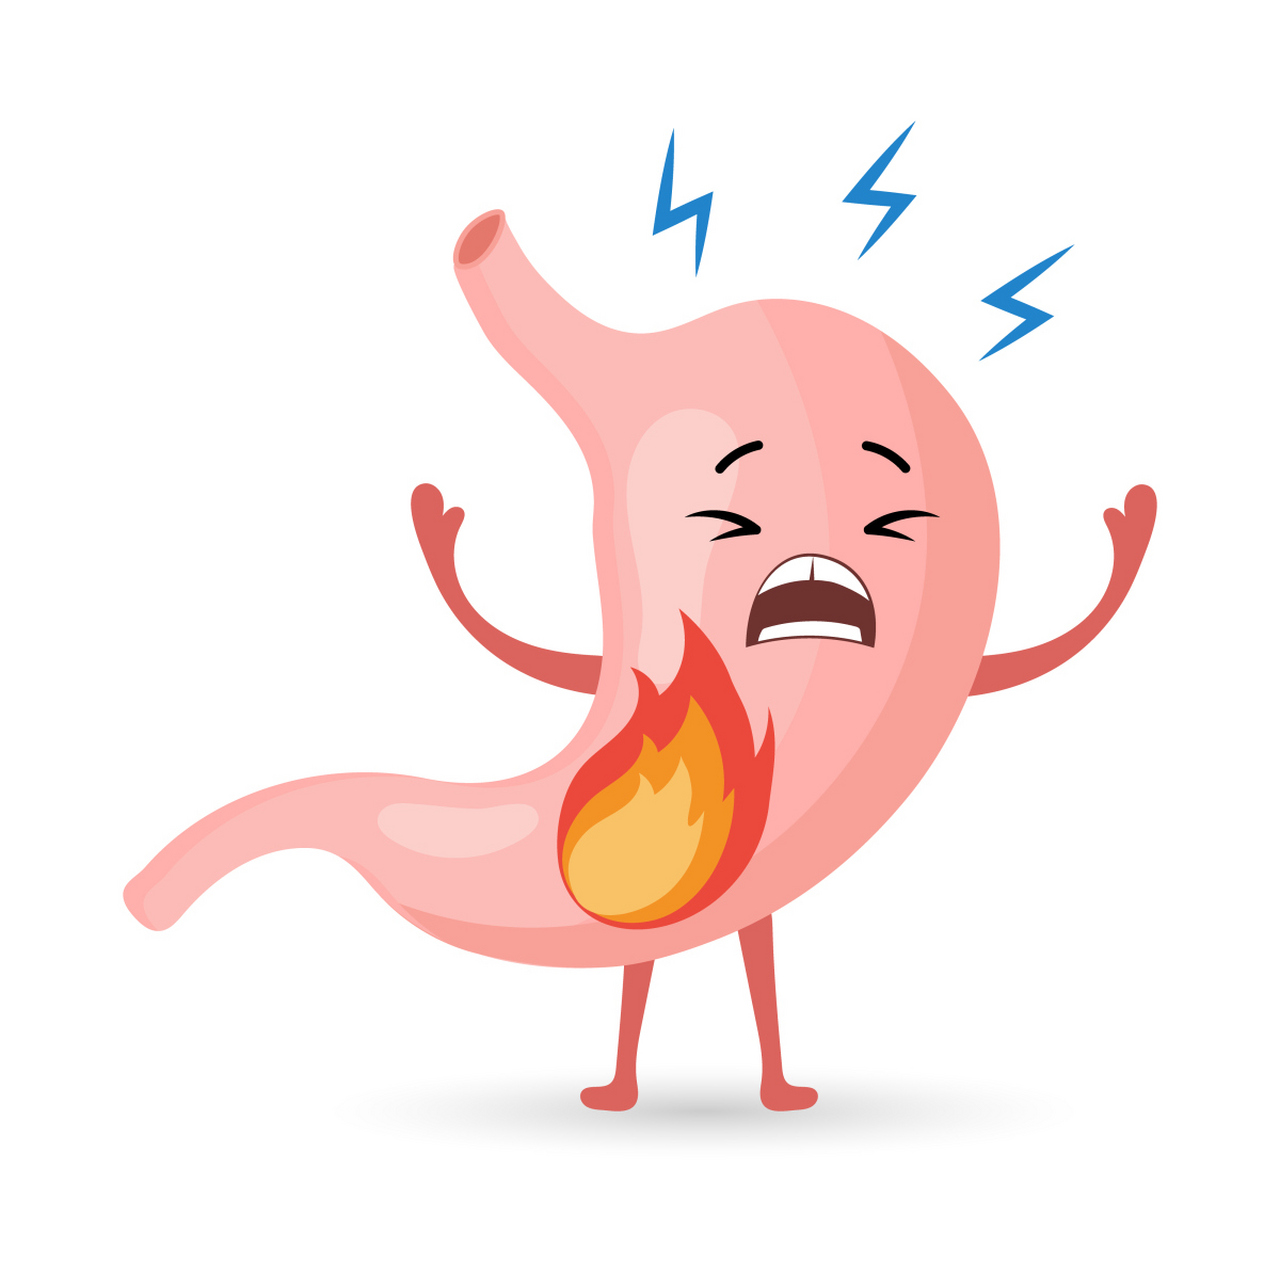 首先,胃食管逆流病是一种常见的胃病,症状之一就是咳嗽